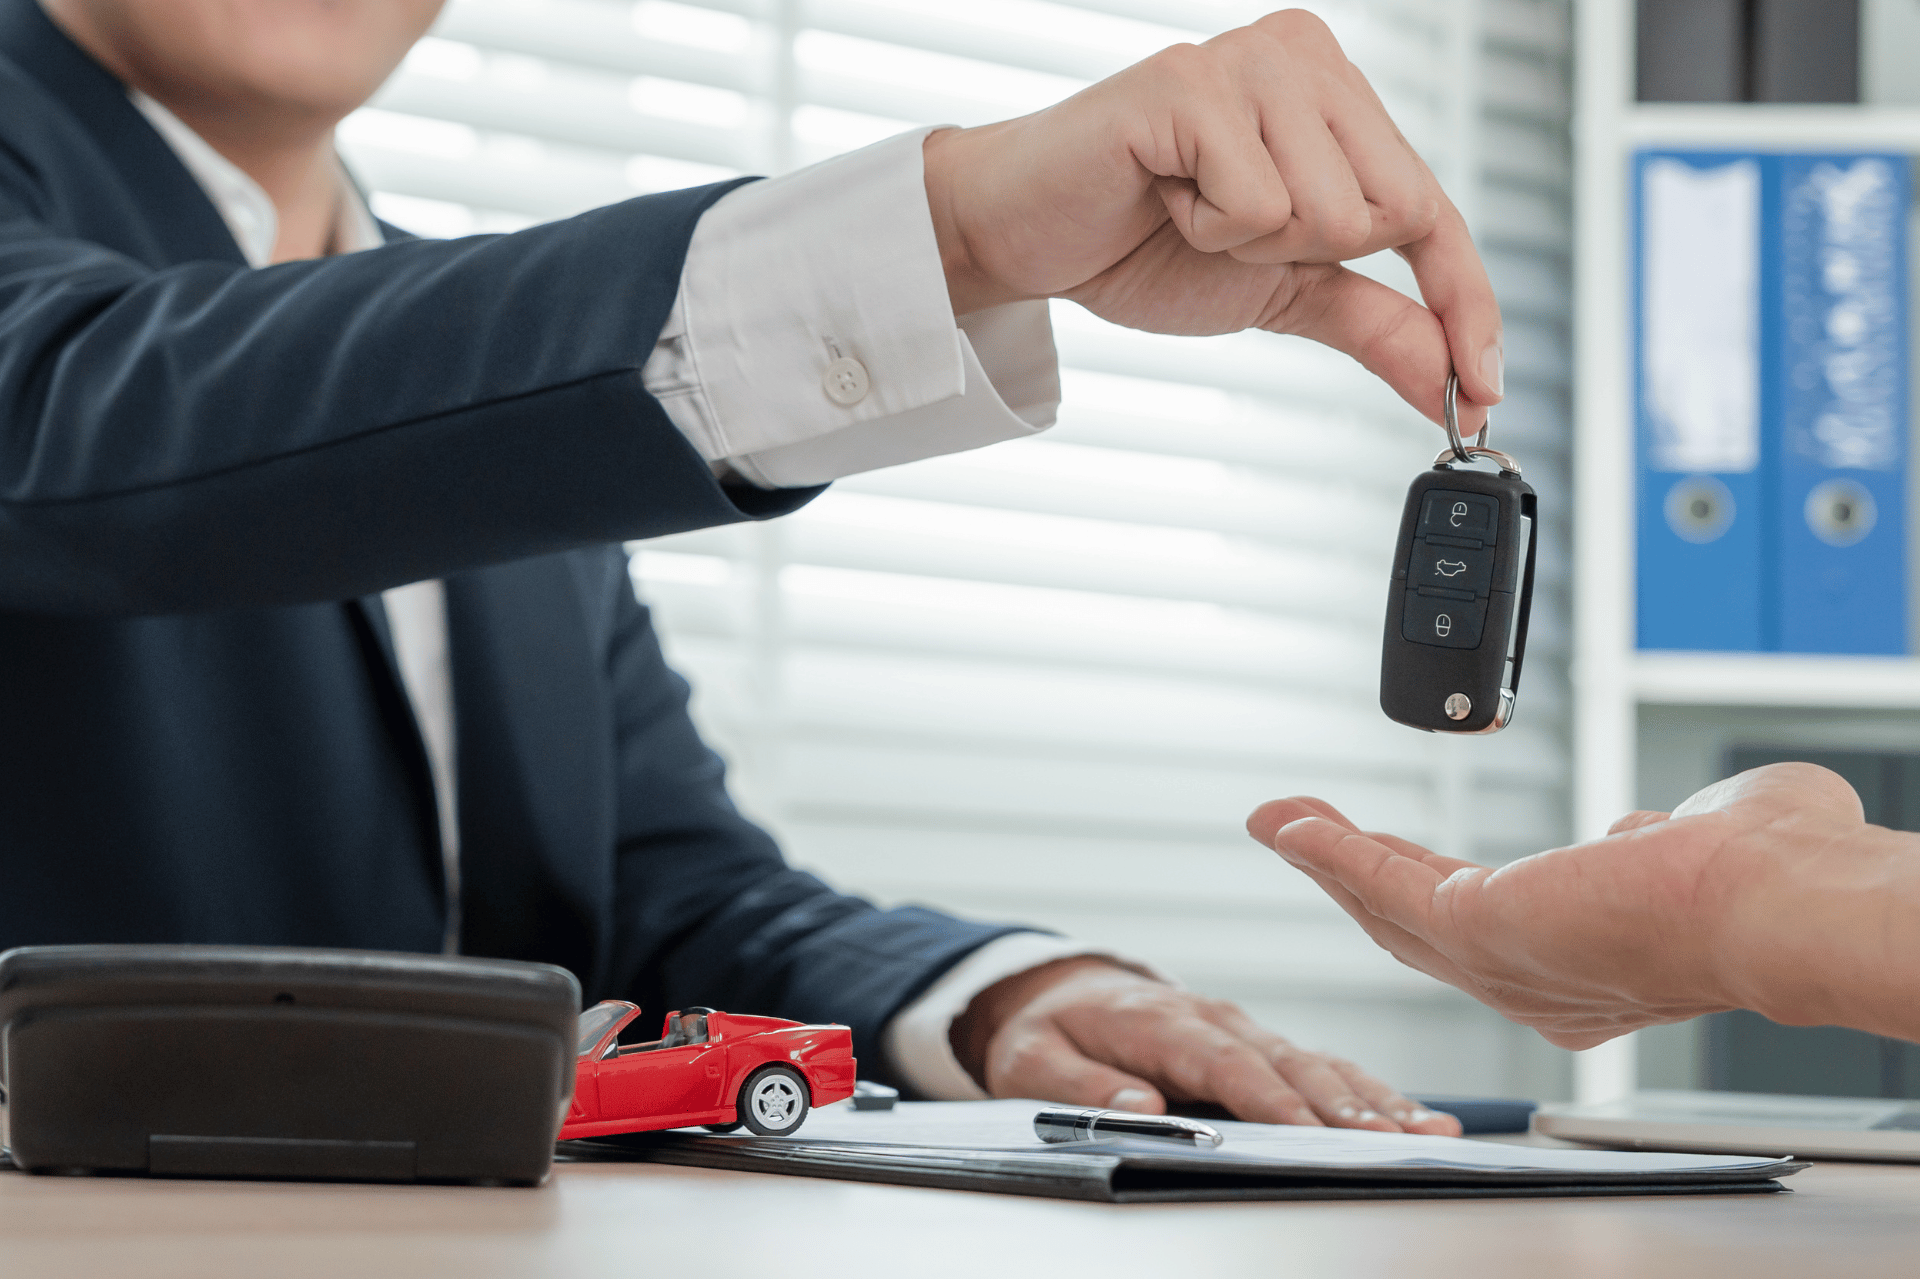 Comment acheter une voiture qui était en leasing ?